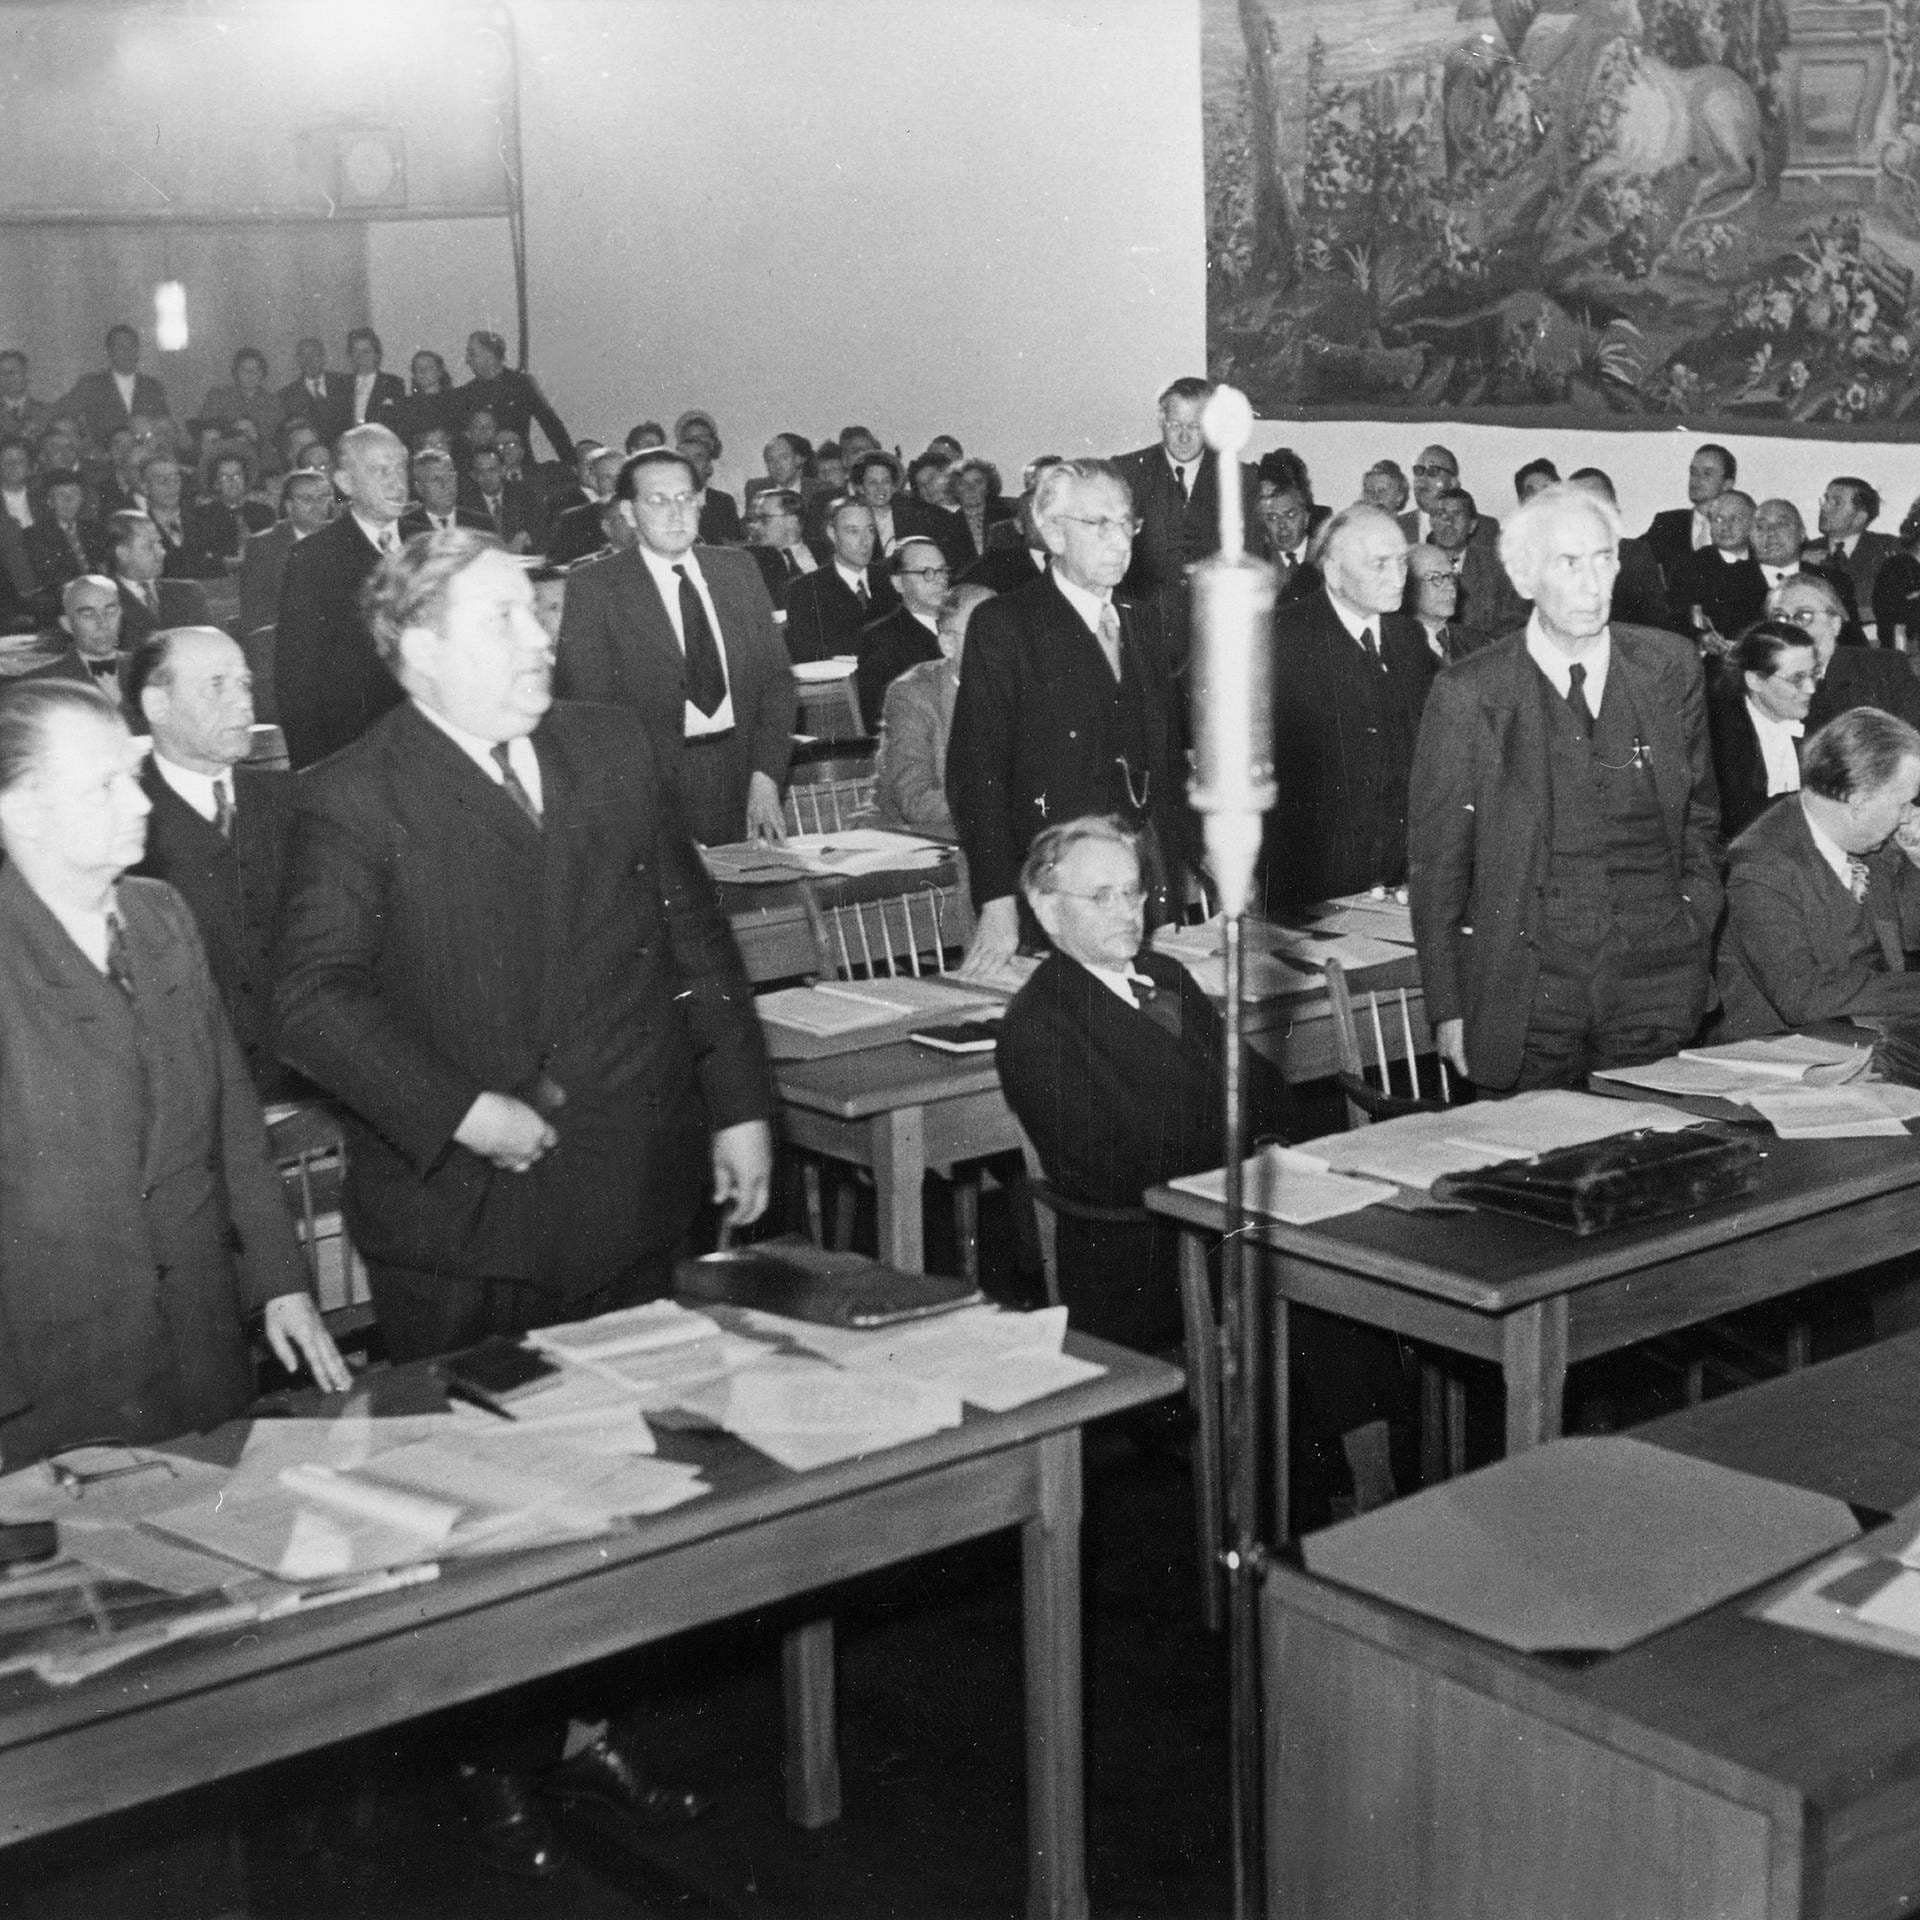 Parlamentarischer Rat stimmt knapp für Bonn als vorläufige Hauptstadt | 10.5.1949